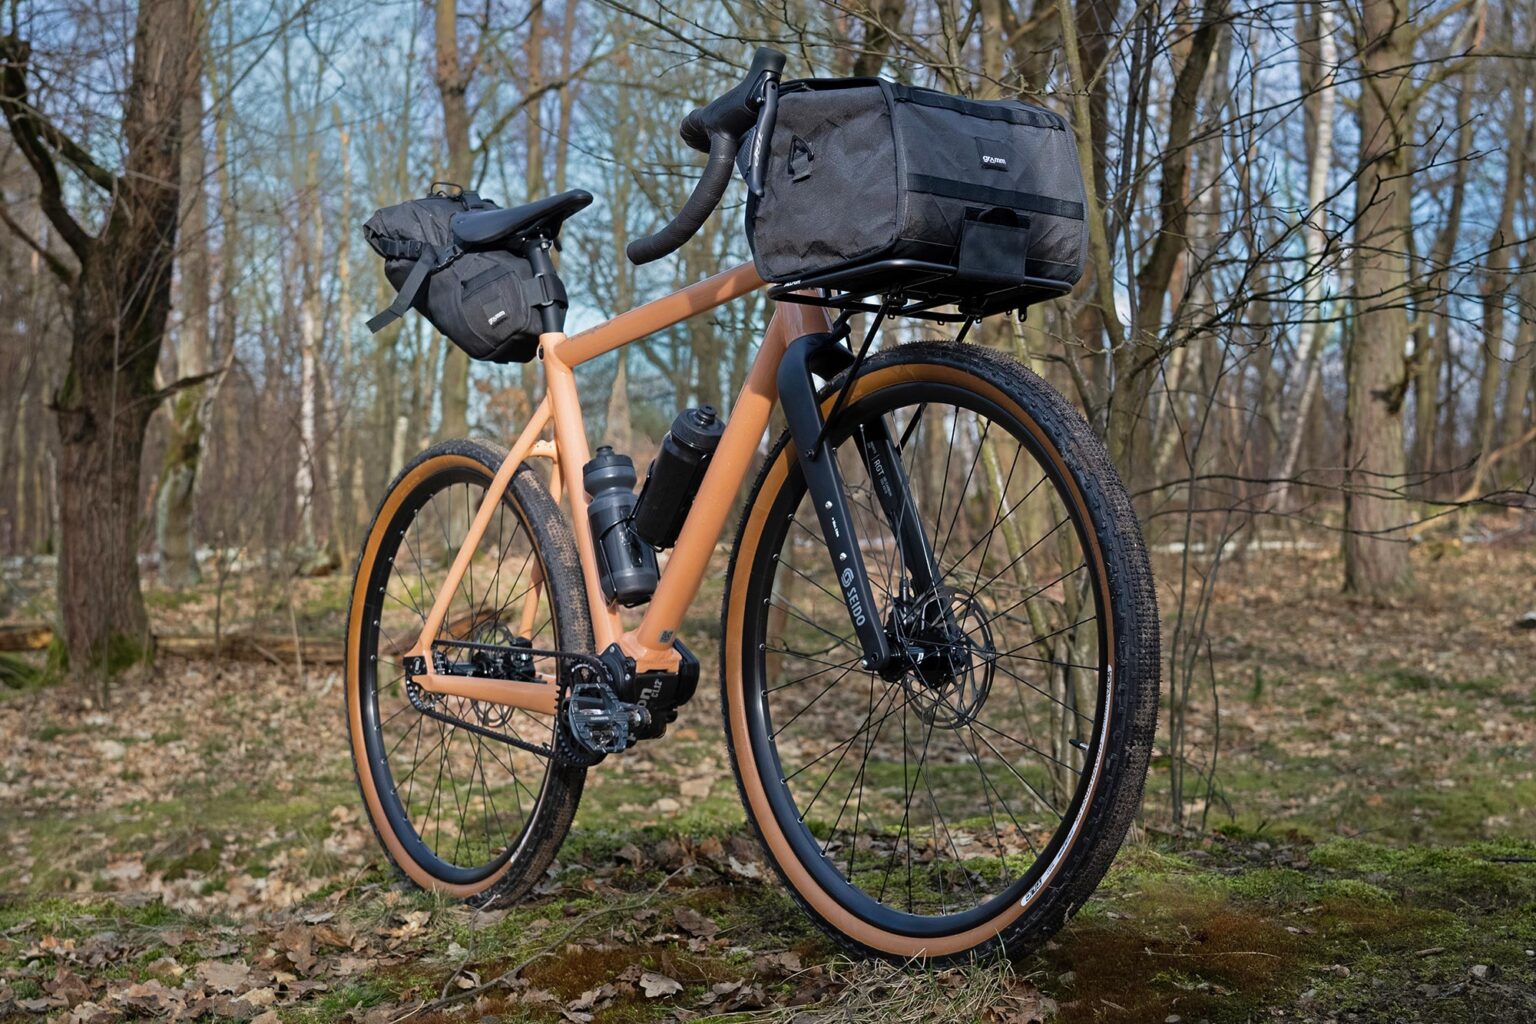 Schindelhauer Wilhelm Gravel alloy belt-drive bike, ready for adventure